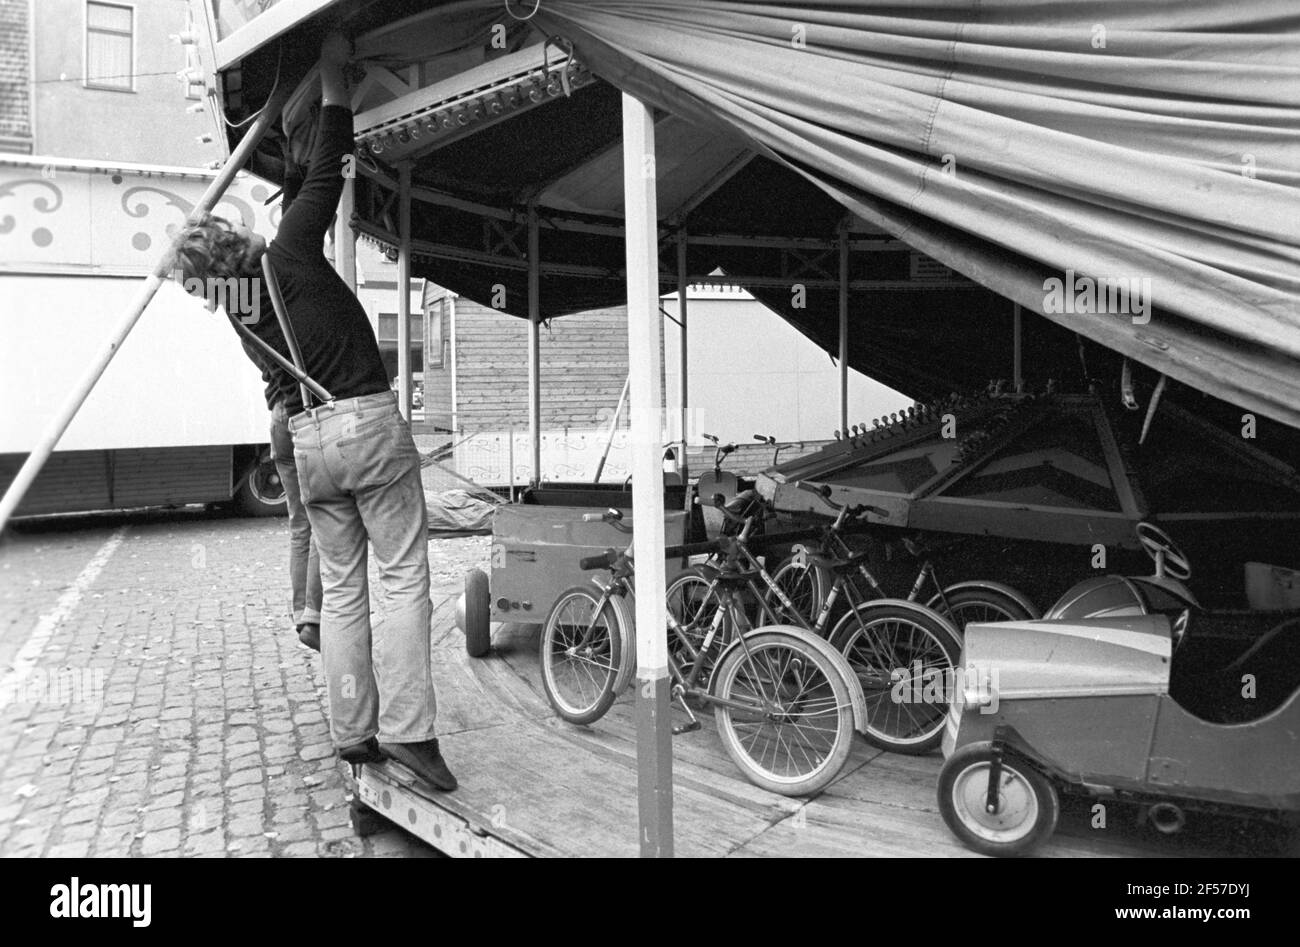 31 dicembre 1981, Sassonia, Delitzsch: Una giostra in una fiera di Delitzsch è aperta all'inizio del 1981. Data esatta della registrazione non nota. Foto: Volkmar Heinz/dpa-Zentralbild/ZB Foto Stock